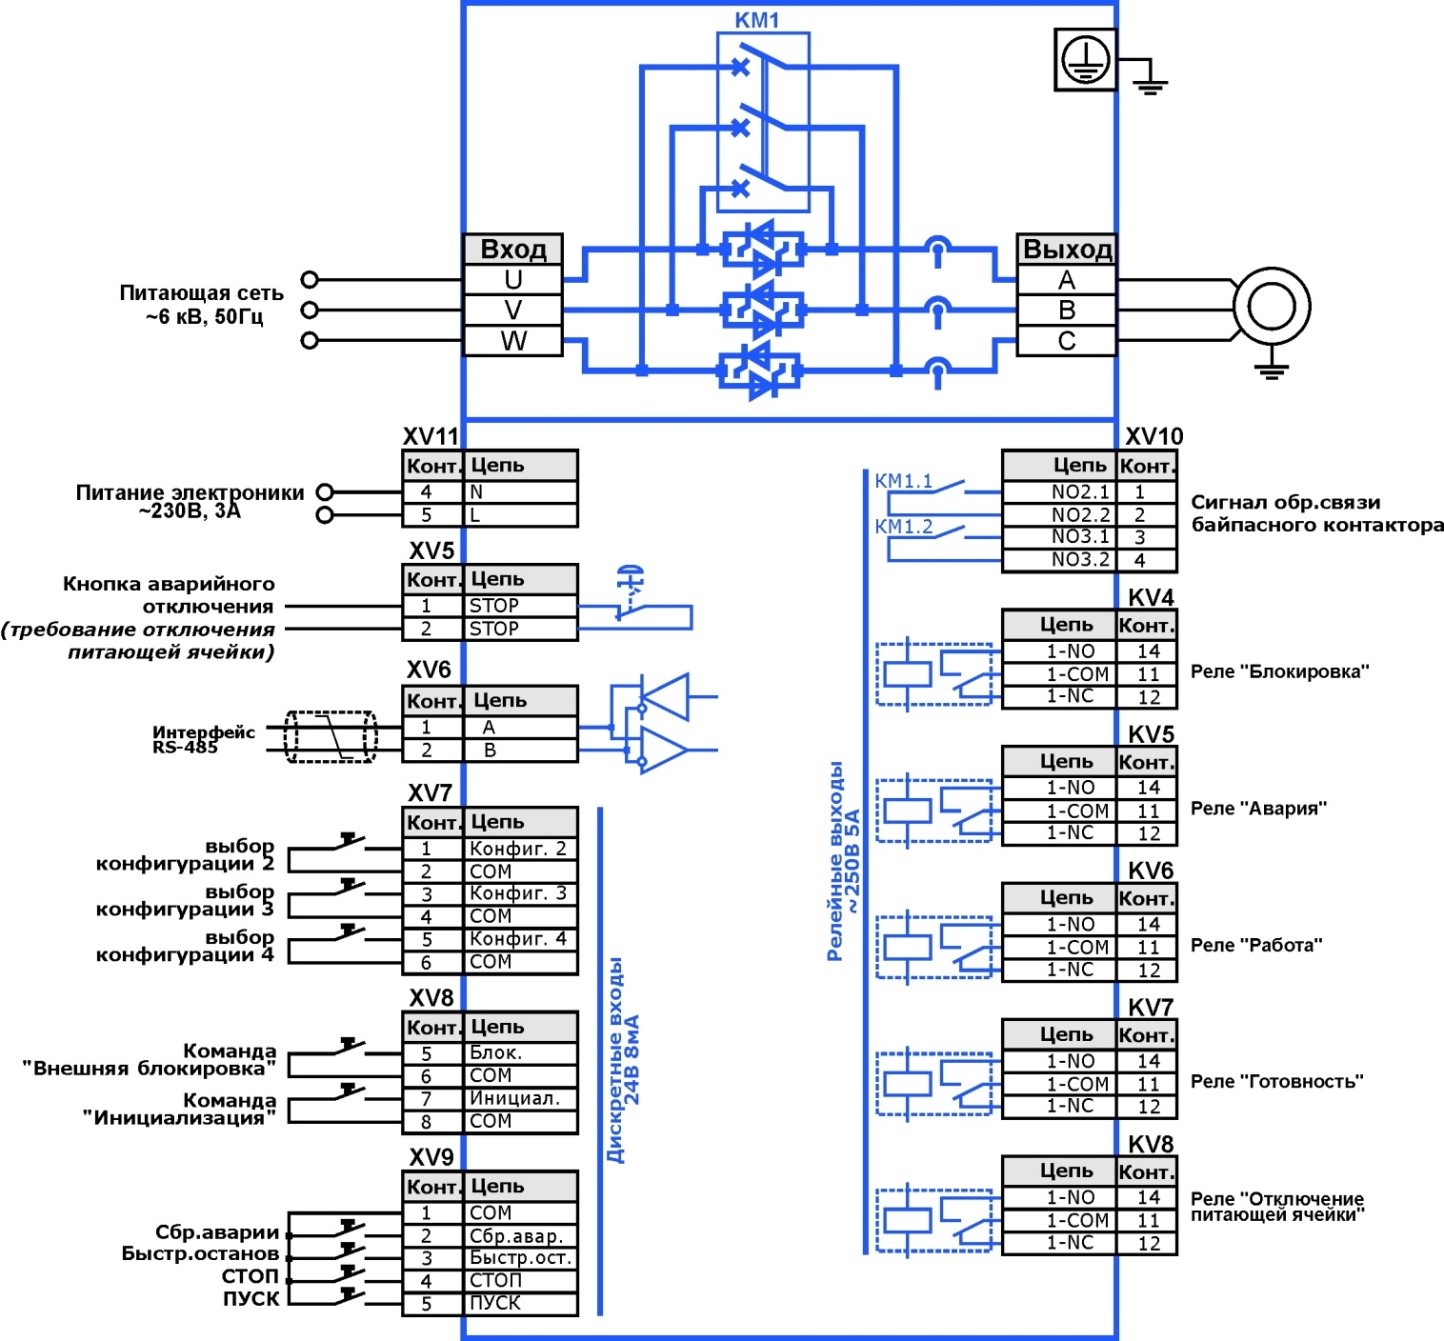 Общая схема подключения силовых и сигнальных цепей УППВ